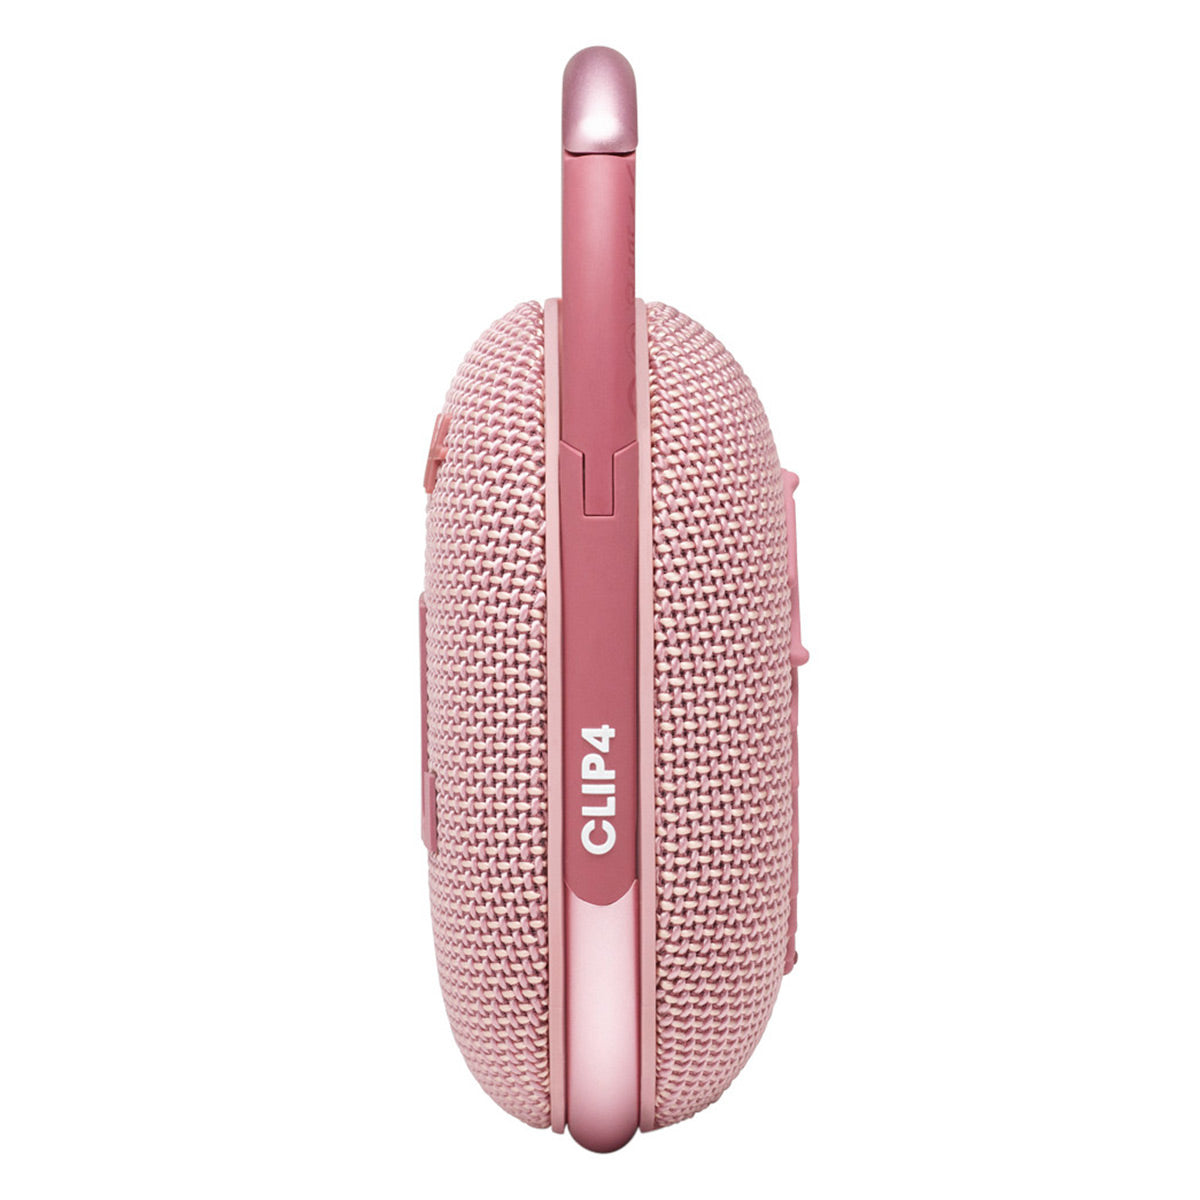 JBL Clip 4 Portable Bluetooth Waterproof Speaker (Pink)